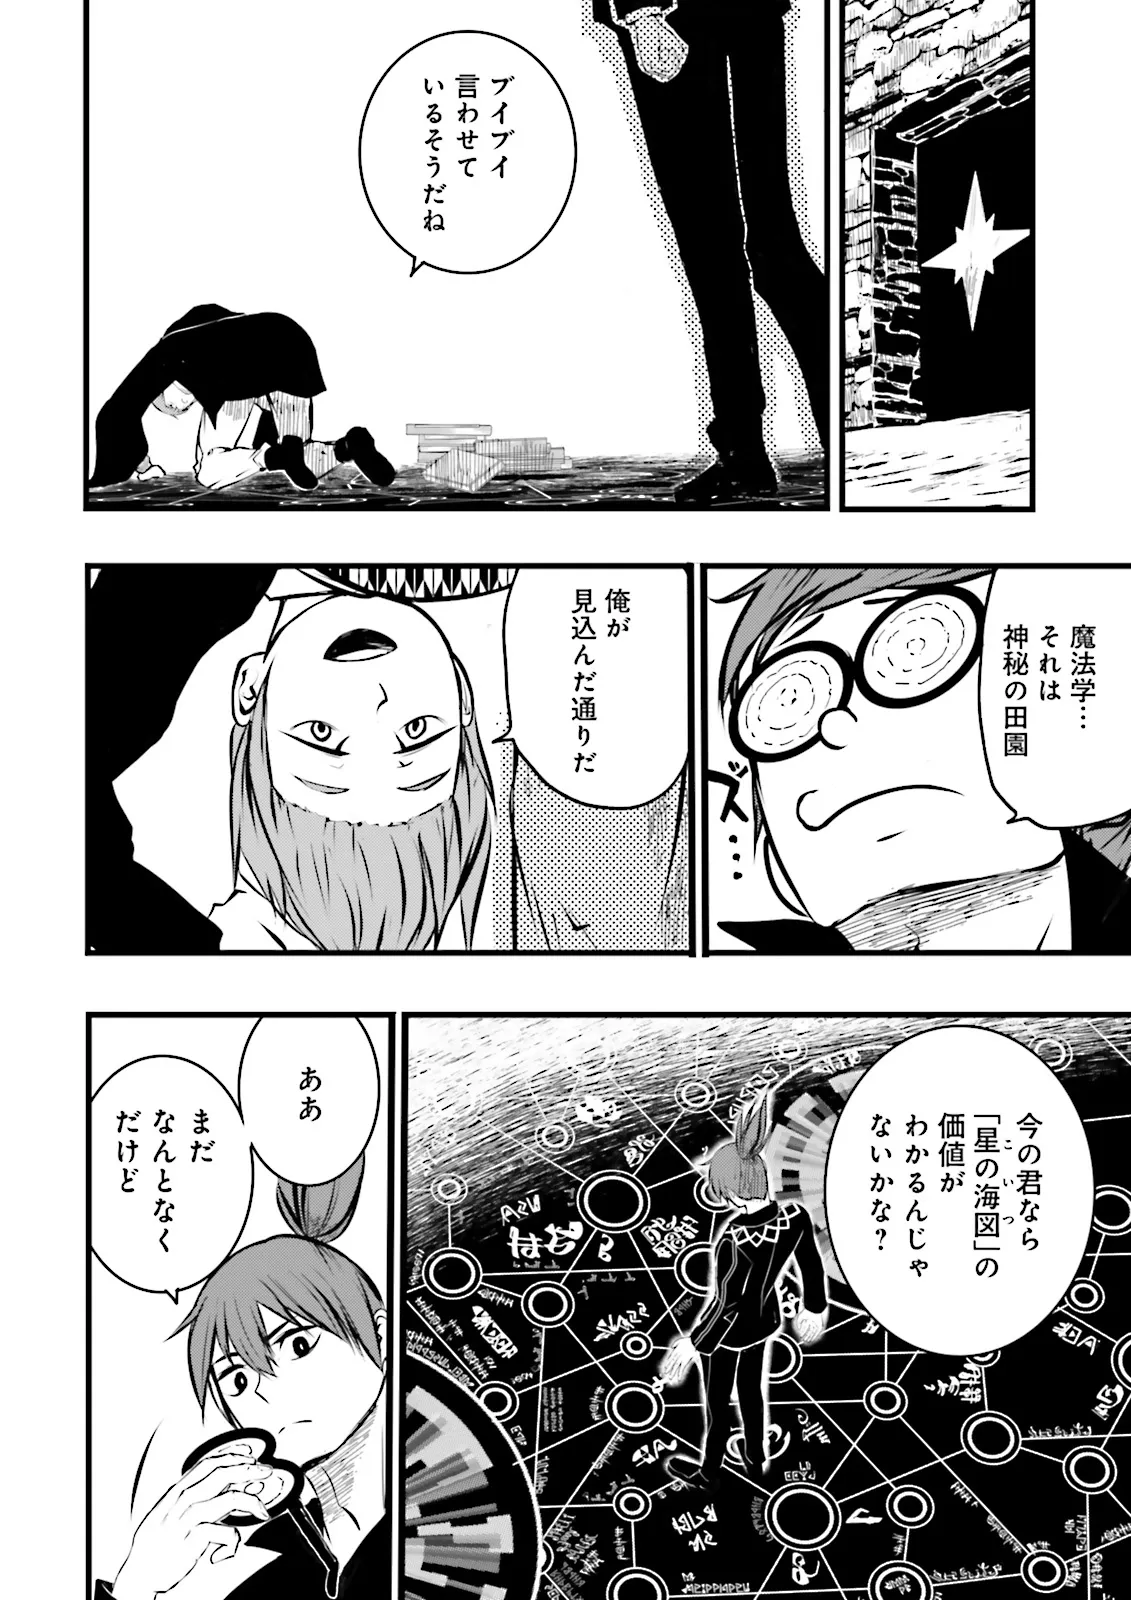 Sukiru Ga Nakereba Level wo Ageru ~ 99 Ga Kansuto No Sekai De Reberu 800 Man Kara Sutato ~ - Chapter 39.1 - Page 2